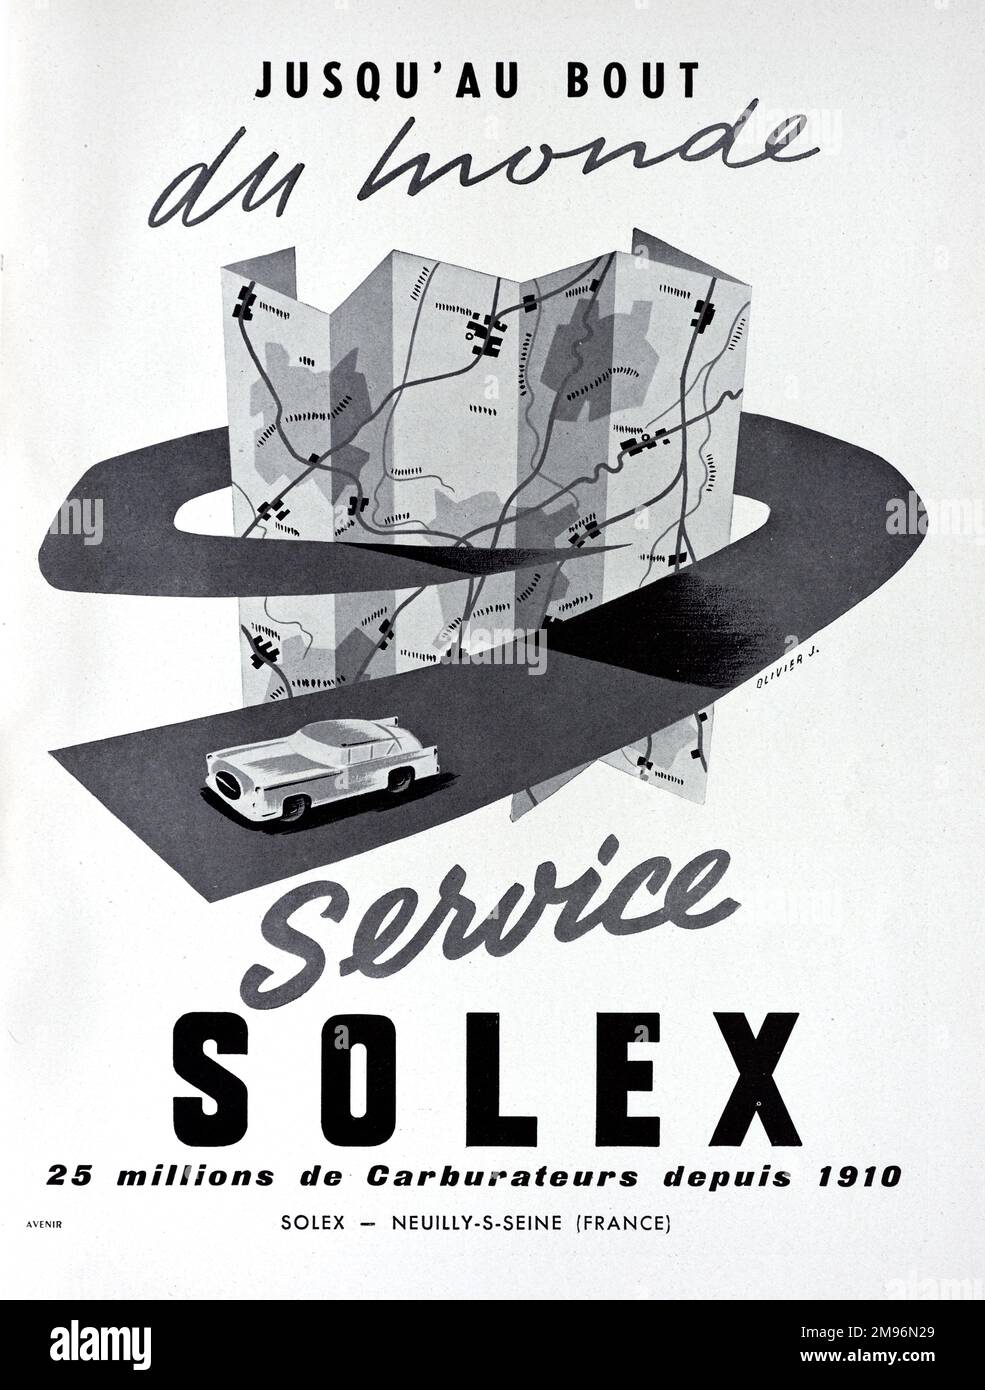 Solex Anuncio 1957 Foto de stock